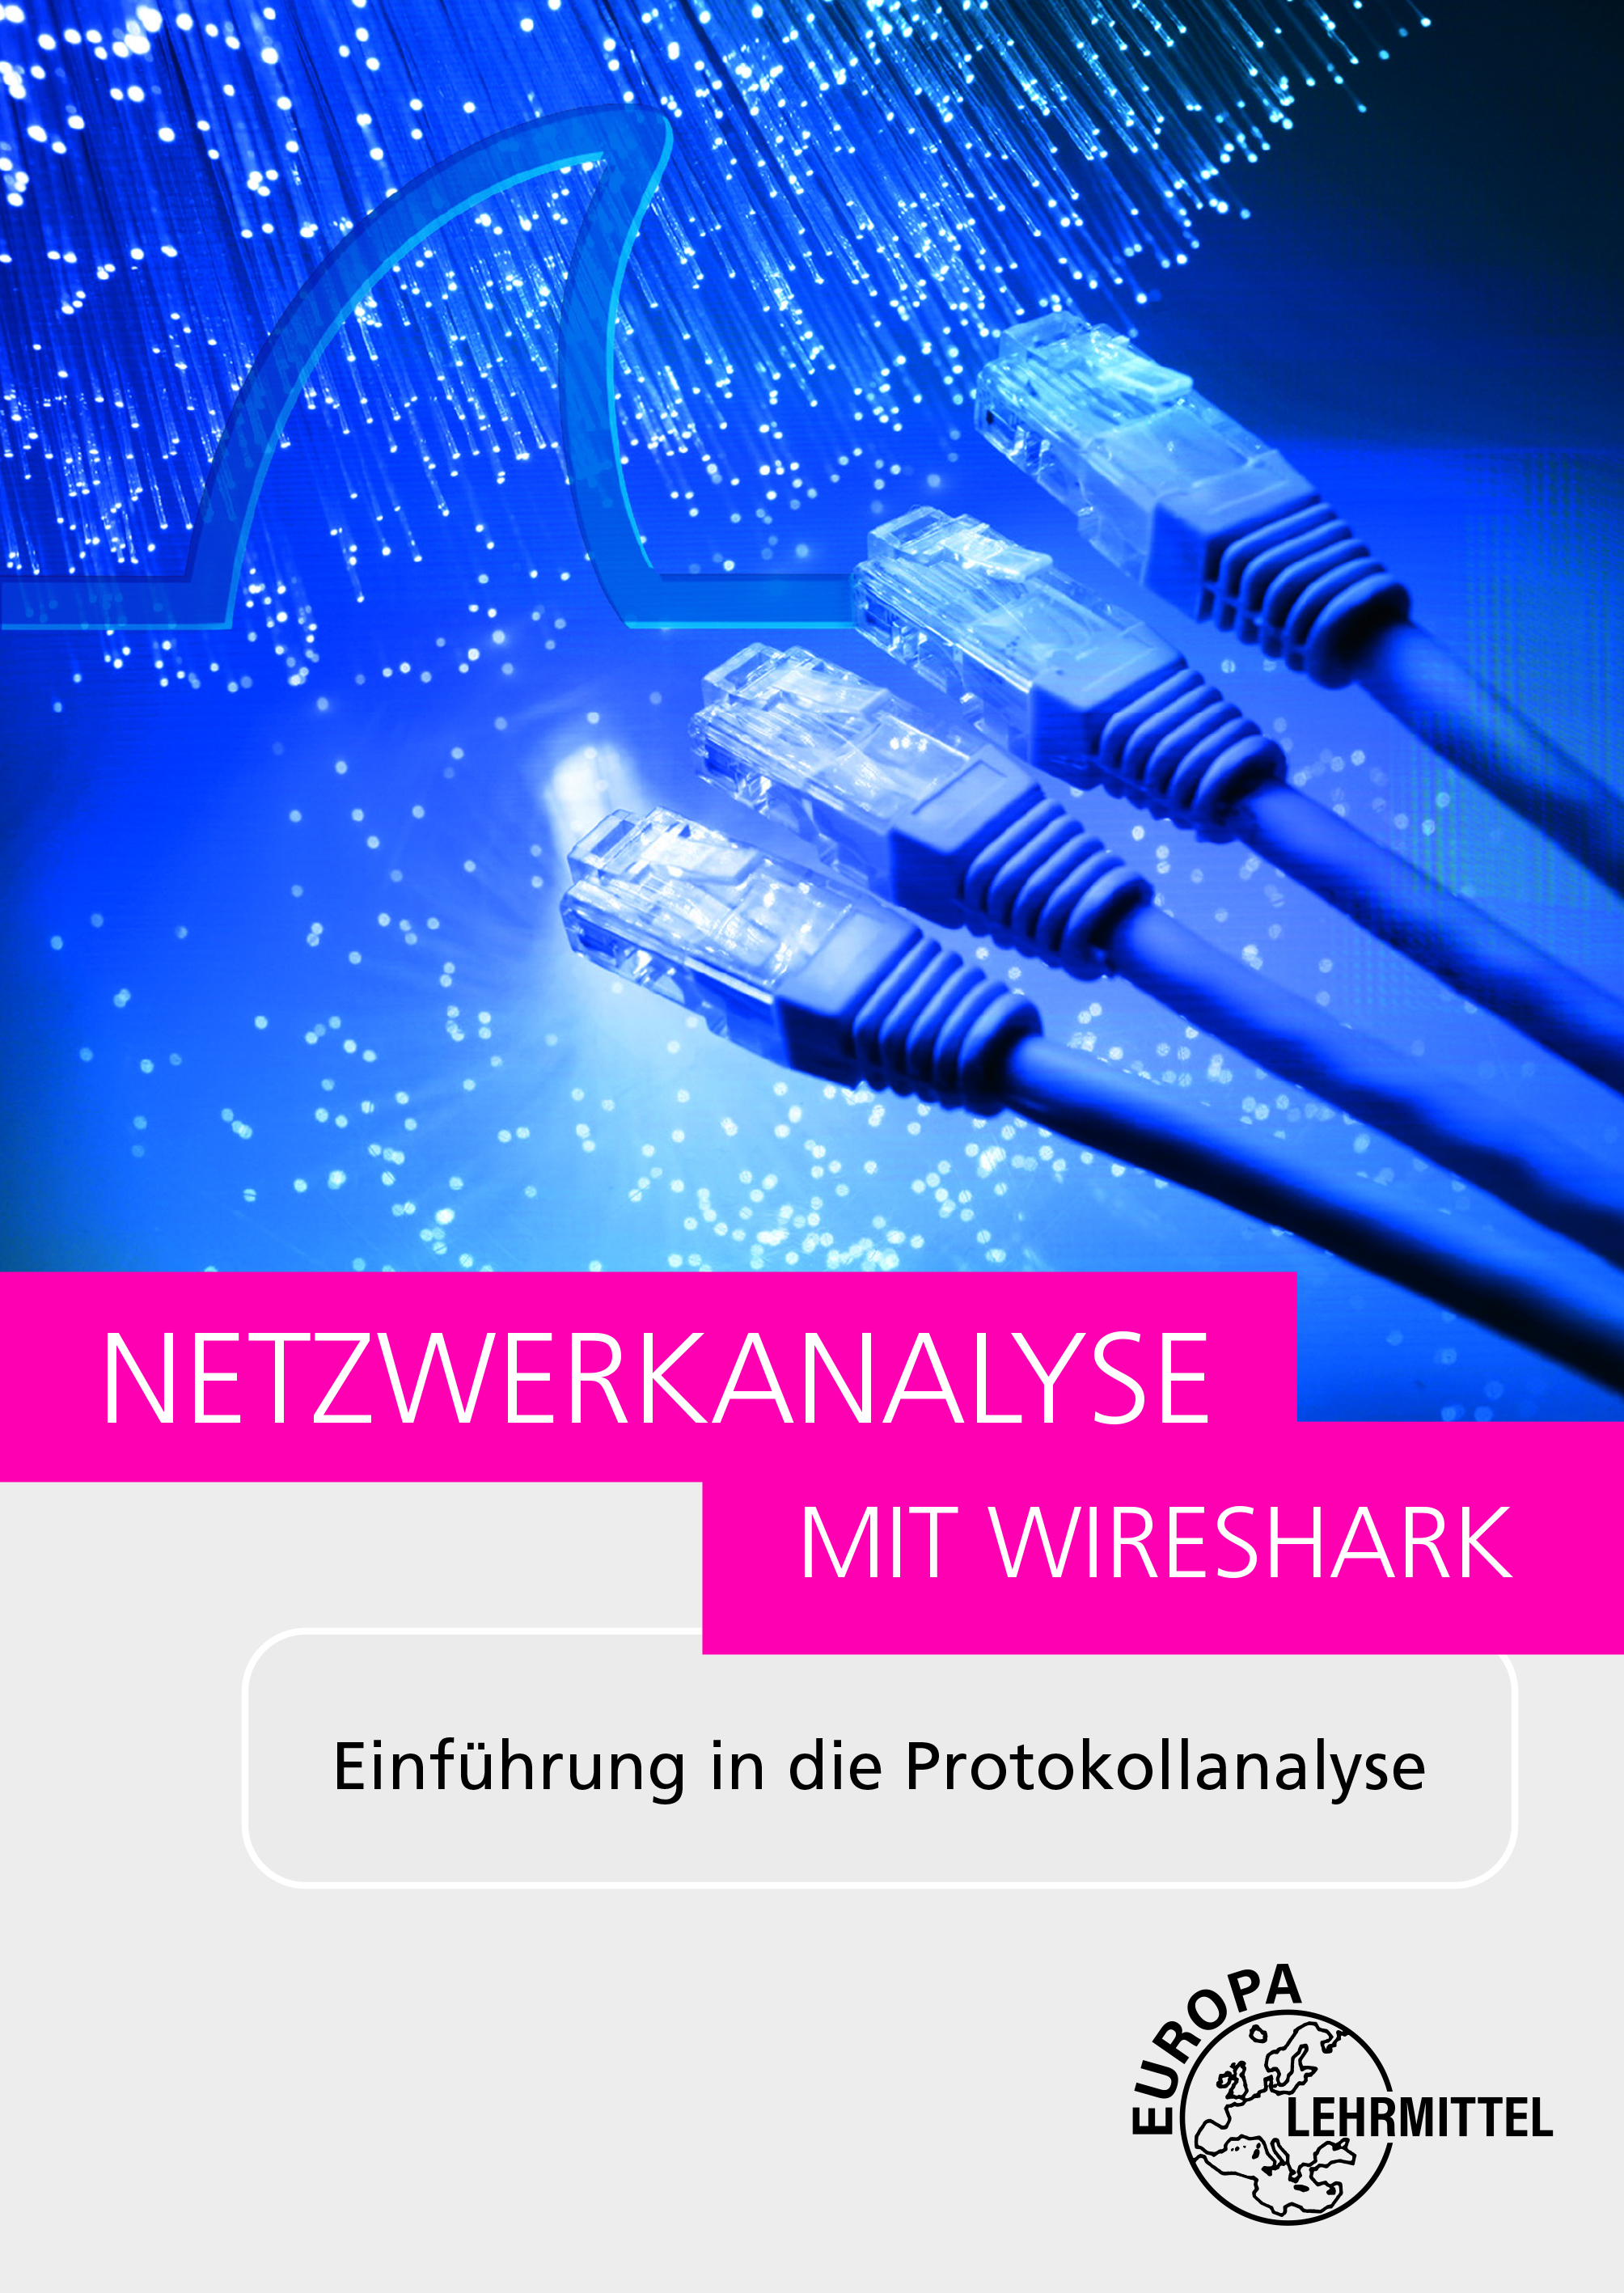 Netzwerkanalyse mit Wireshark